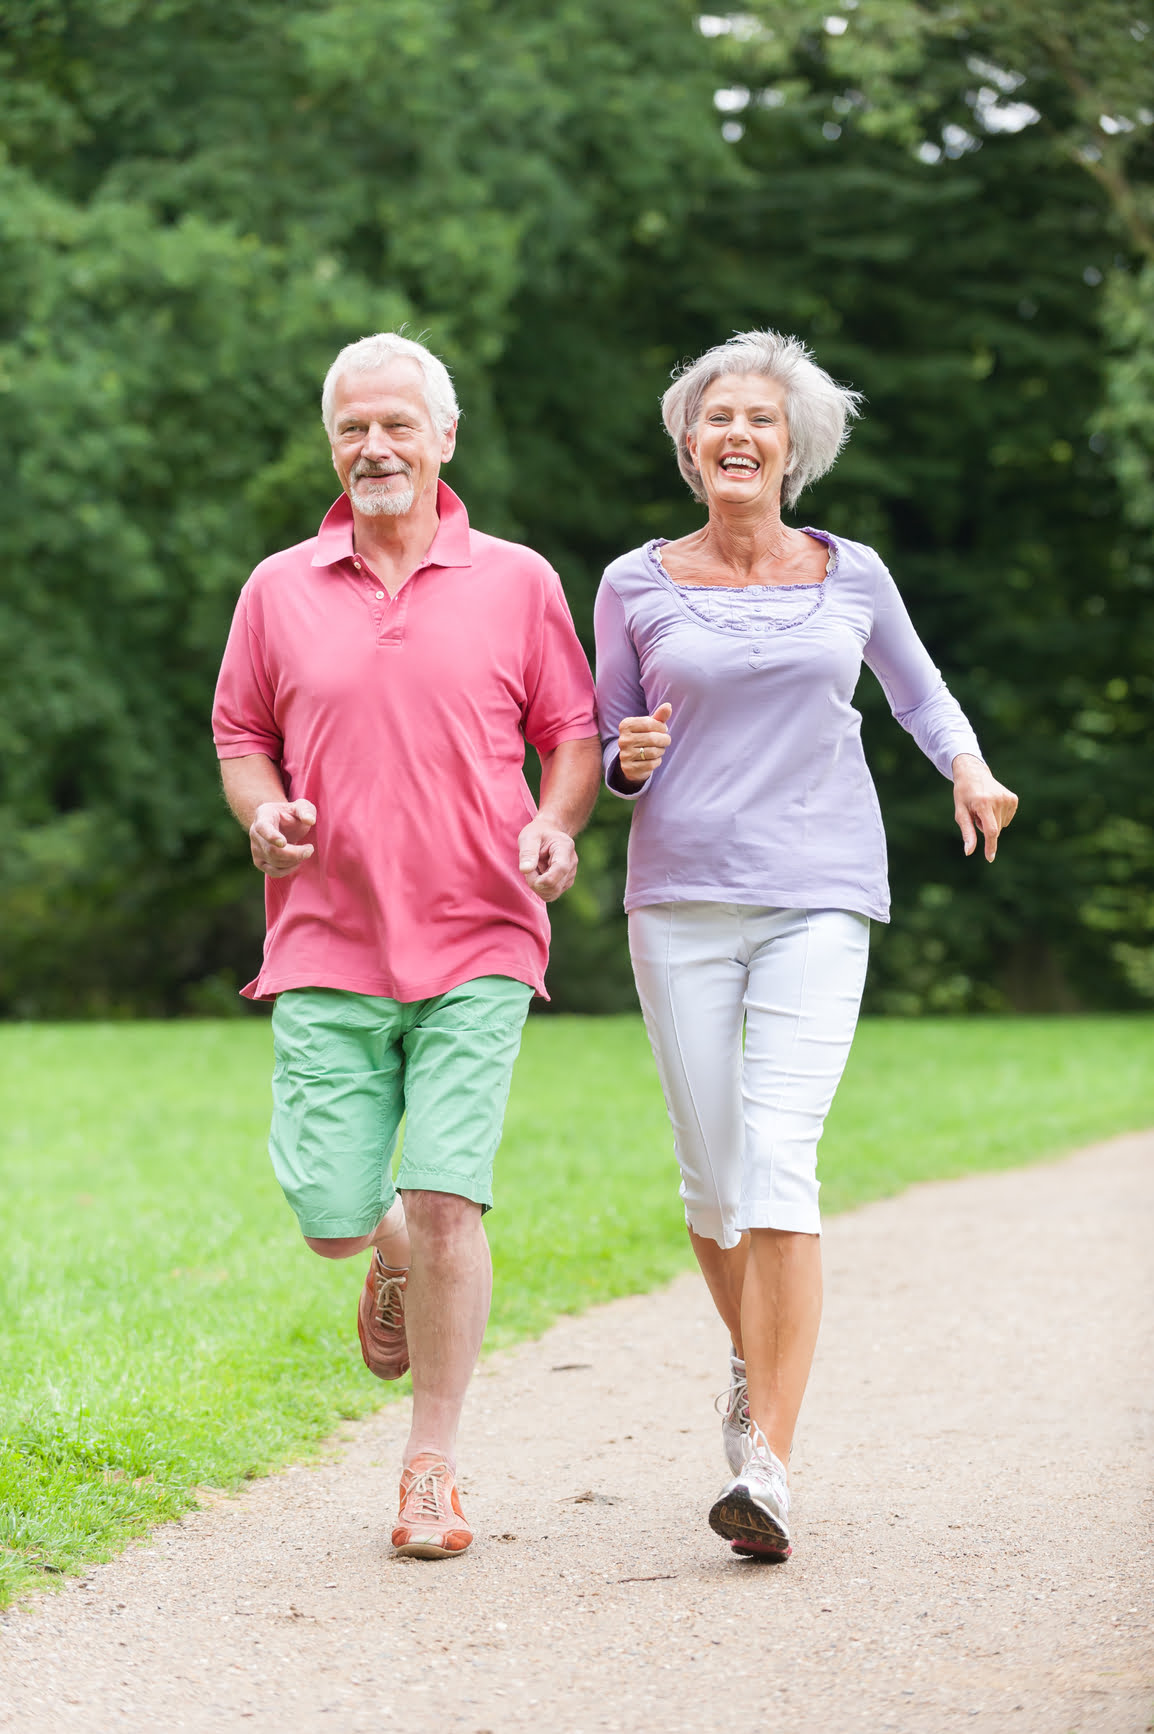 Retardar o envelhecimento Regeneração exercícios físicos